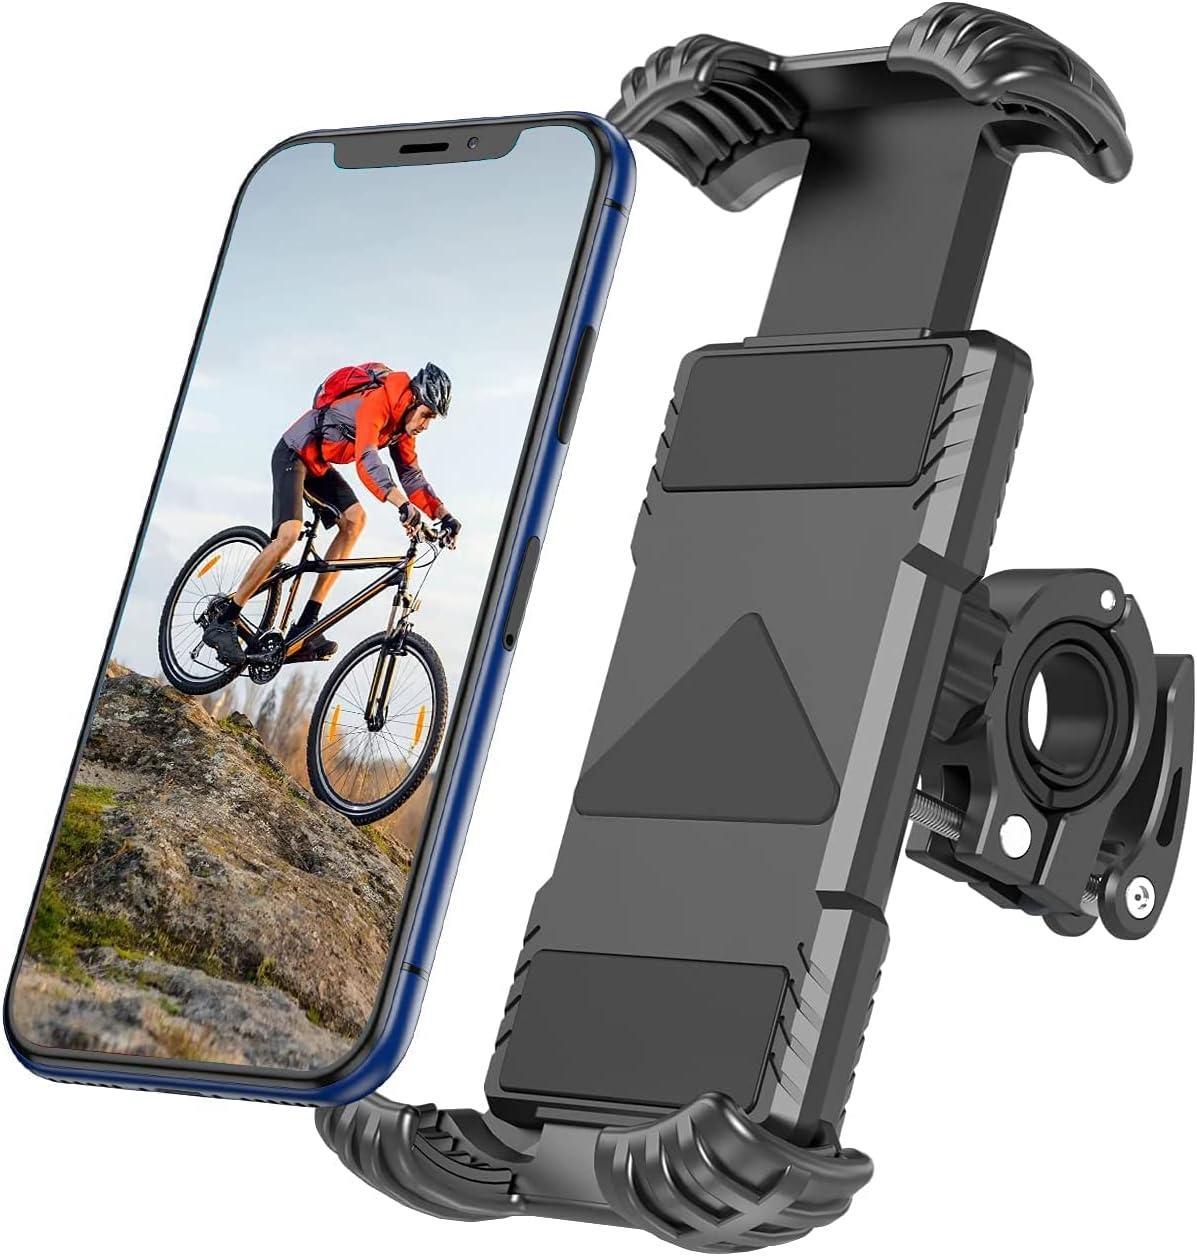 Bike phone holder 4.9-6.8 inches